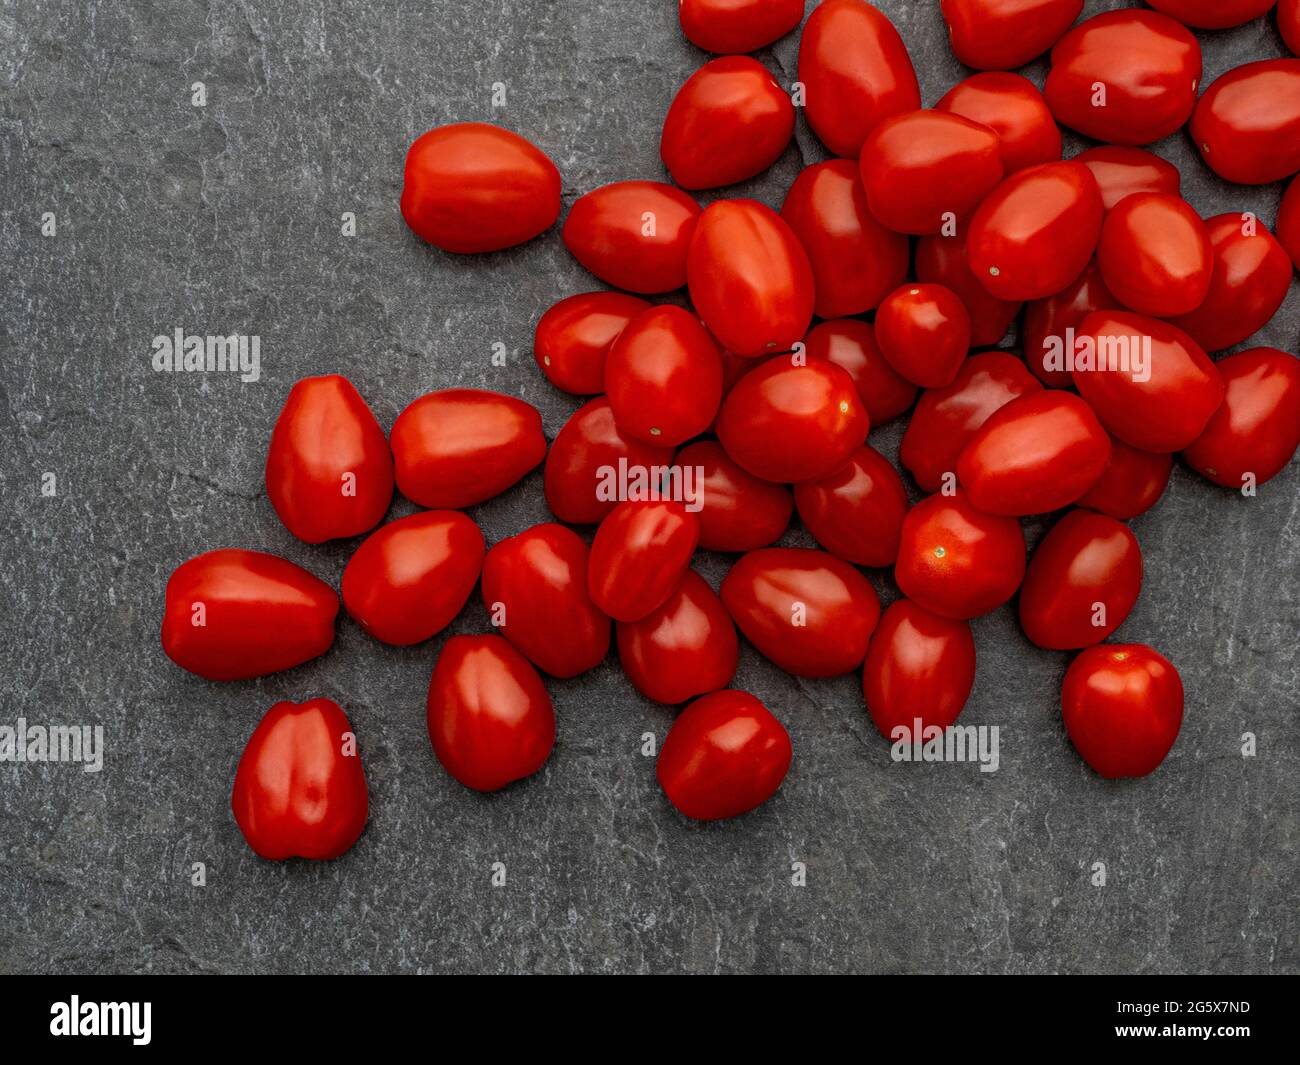 Vista en planta de tomates ciruelos pequeños sobre fondo gris texturizado Foto de stock